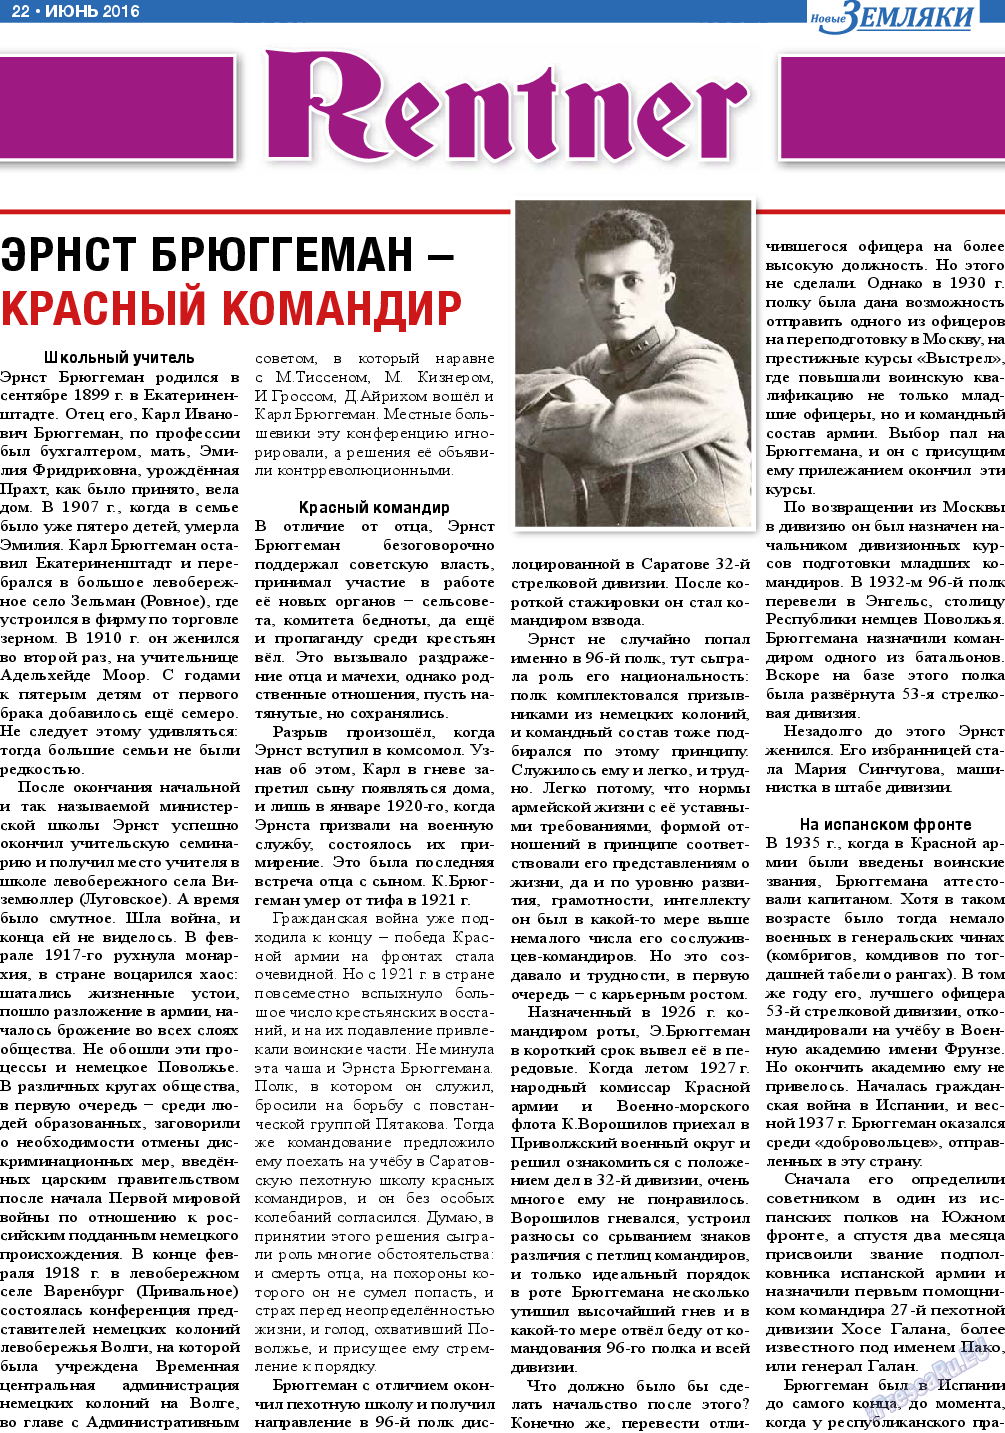 Новые Земляки, газета. 2016 №6 стр.22